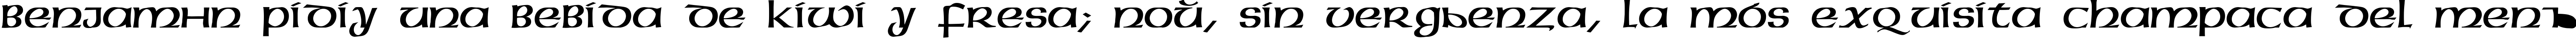 Пример написания шрифтом Megen Medium текста на испанском